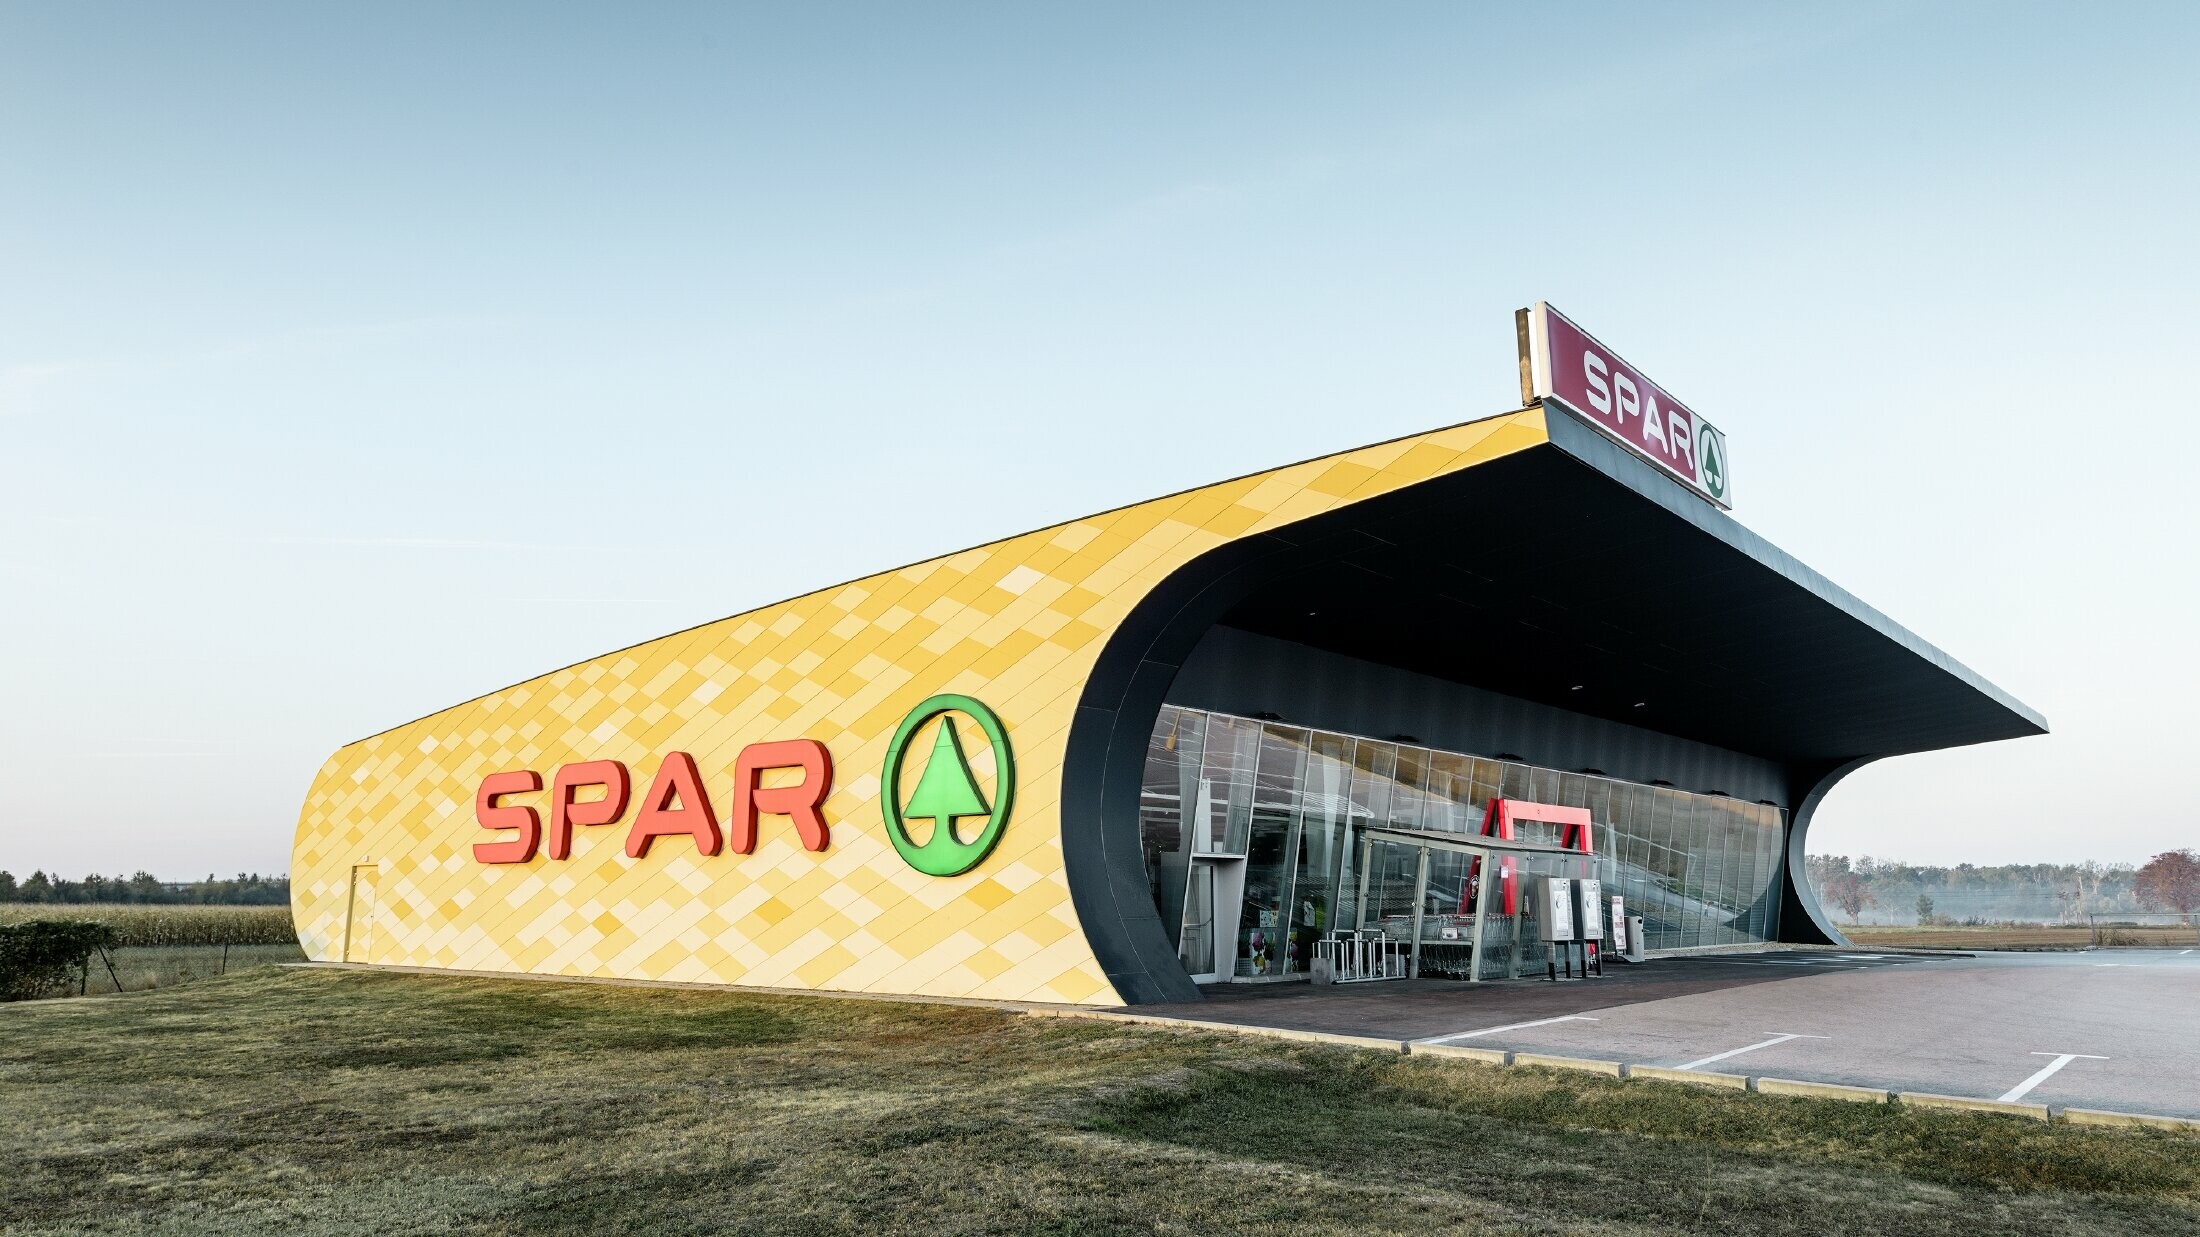 Predajňa obchodného reťazca Spar s hliníkovou fasádou v žltooranžovom károvanom dizajne s logom Spar